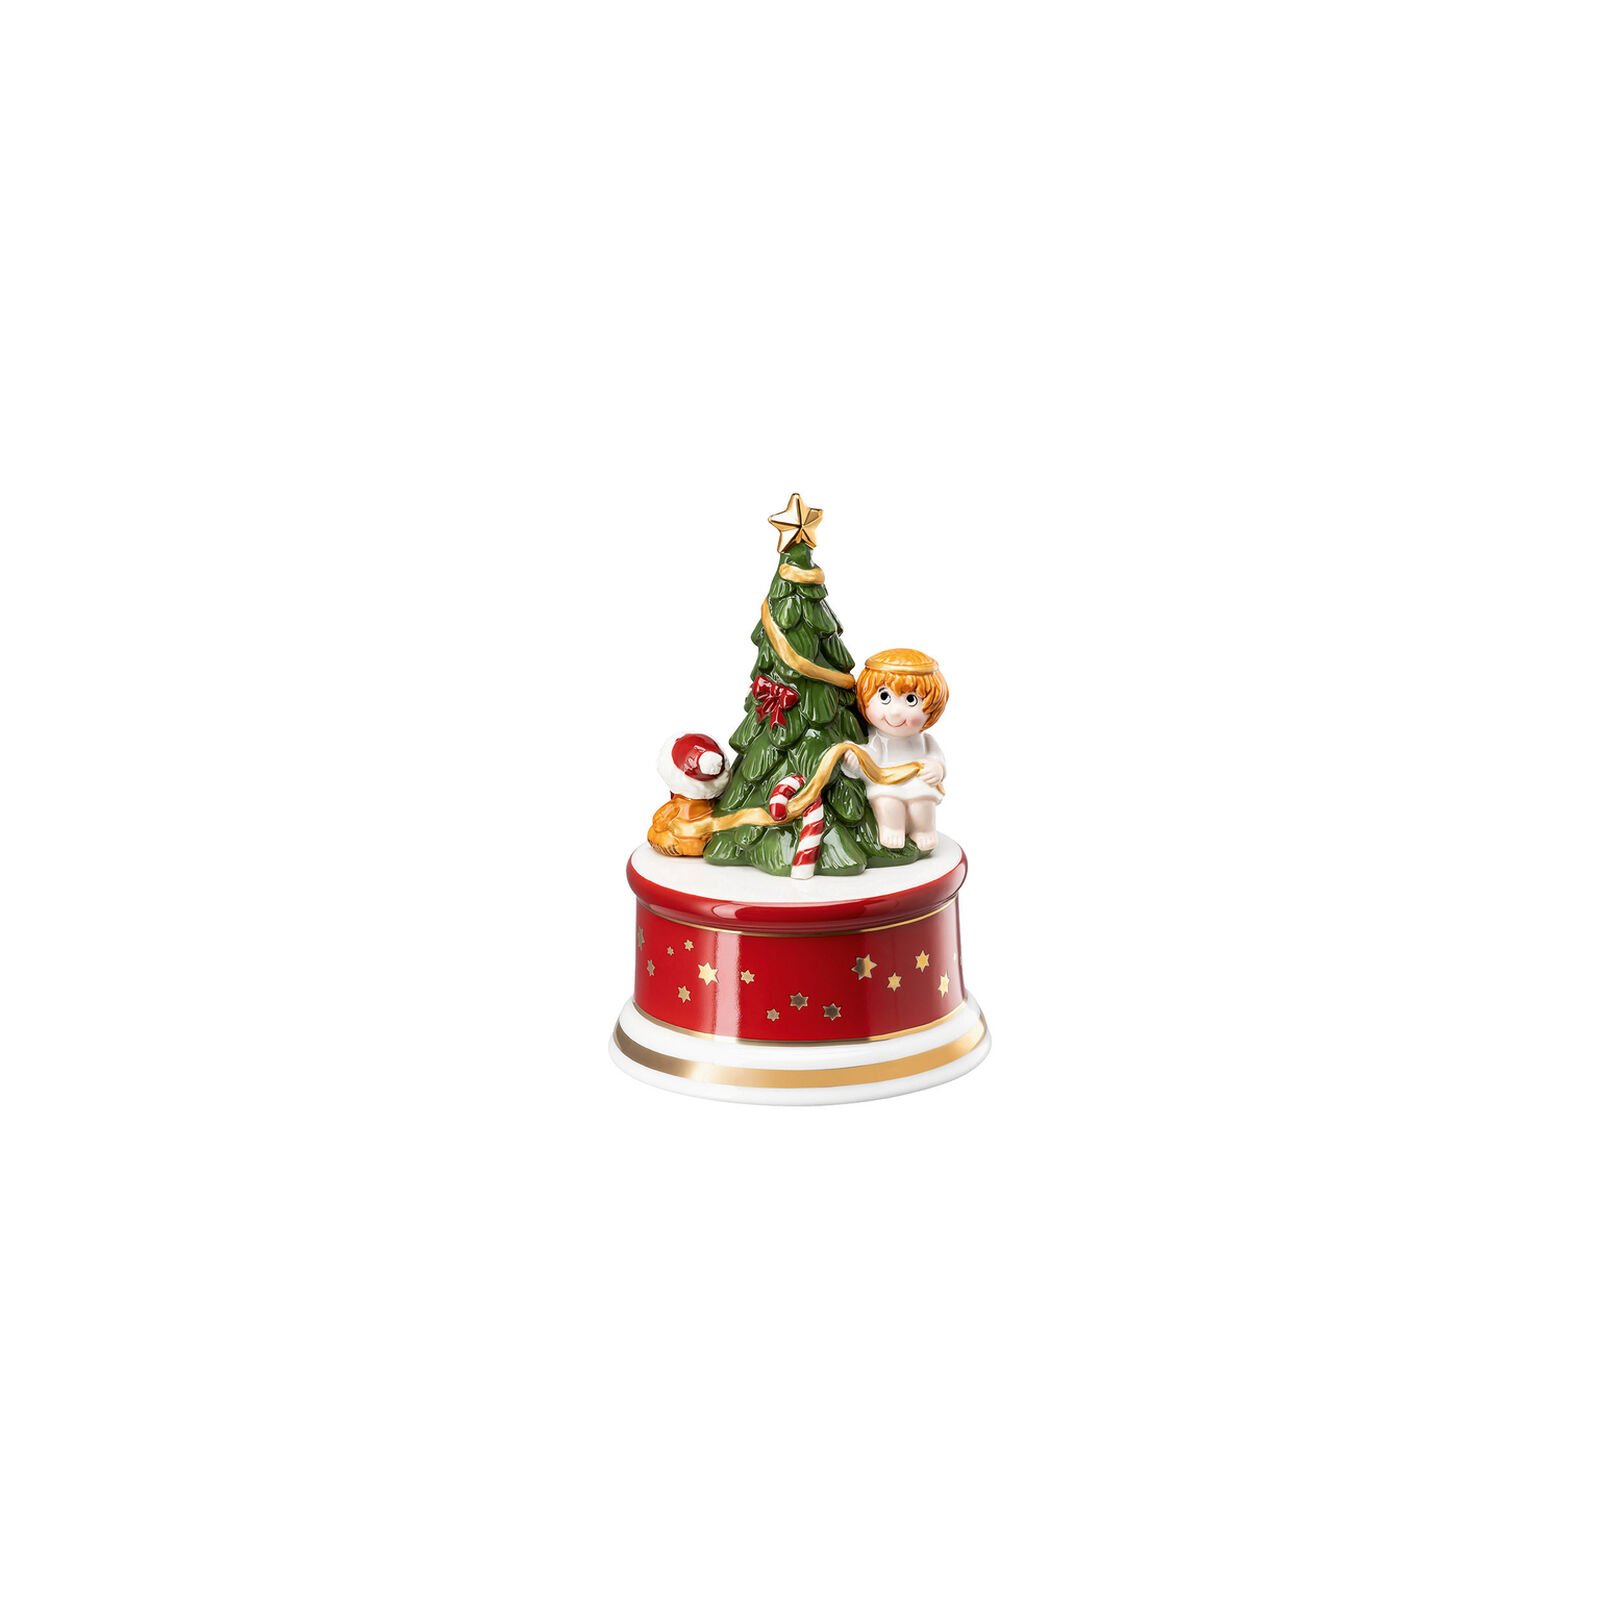 Hutschenreuther Porzellan, Spieluhr klein, Weihnachtslieder Am